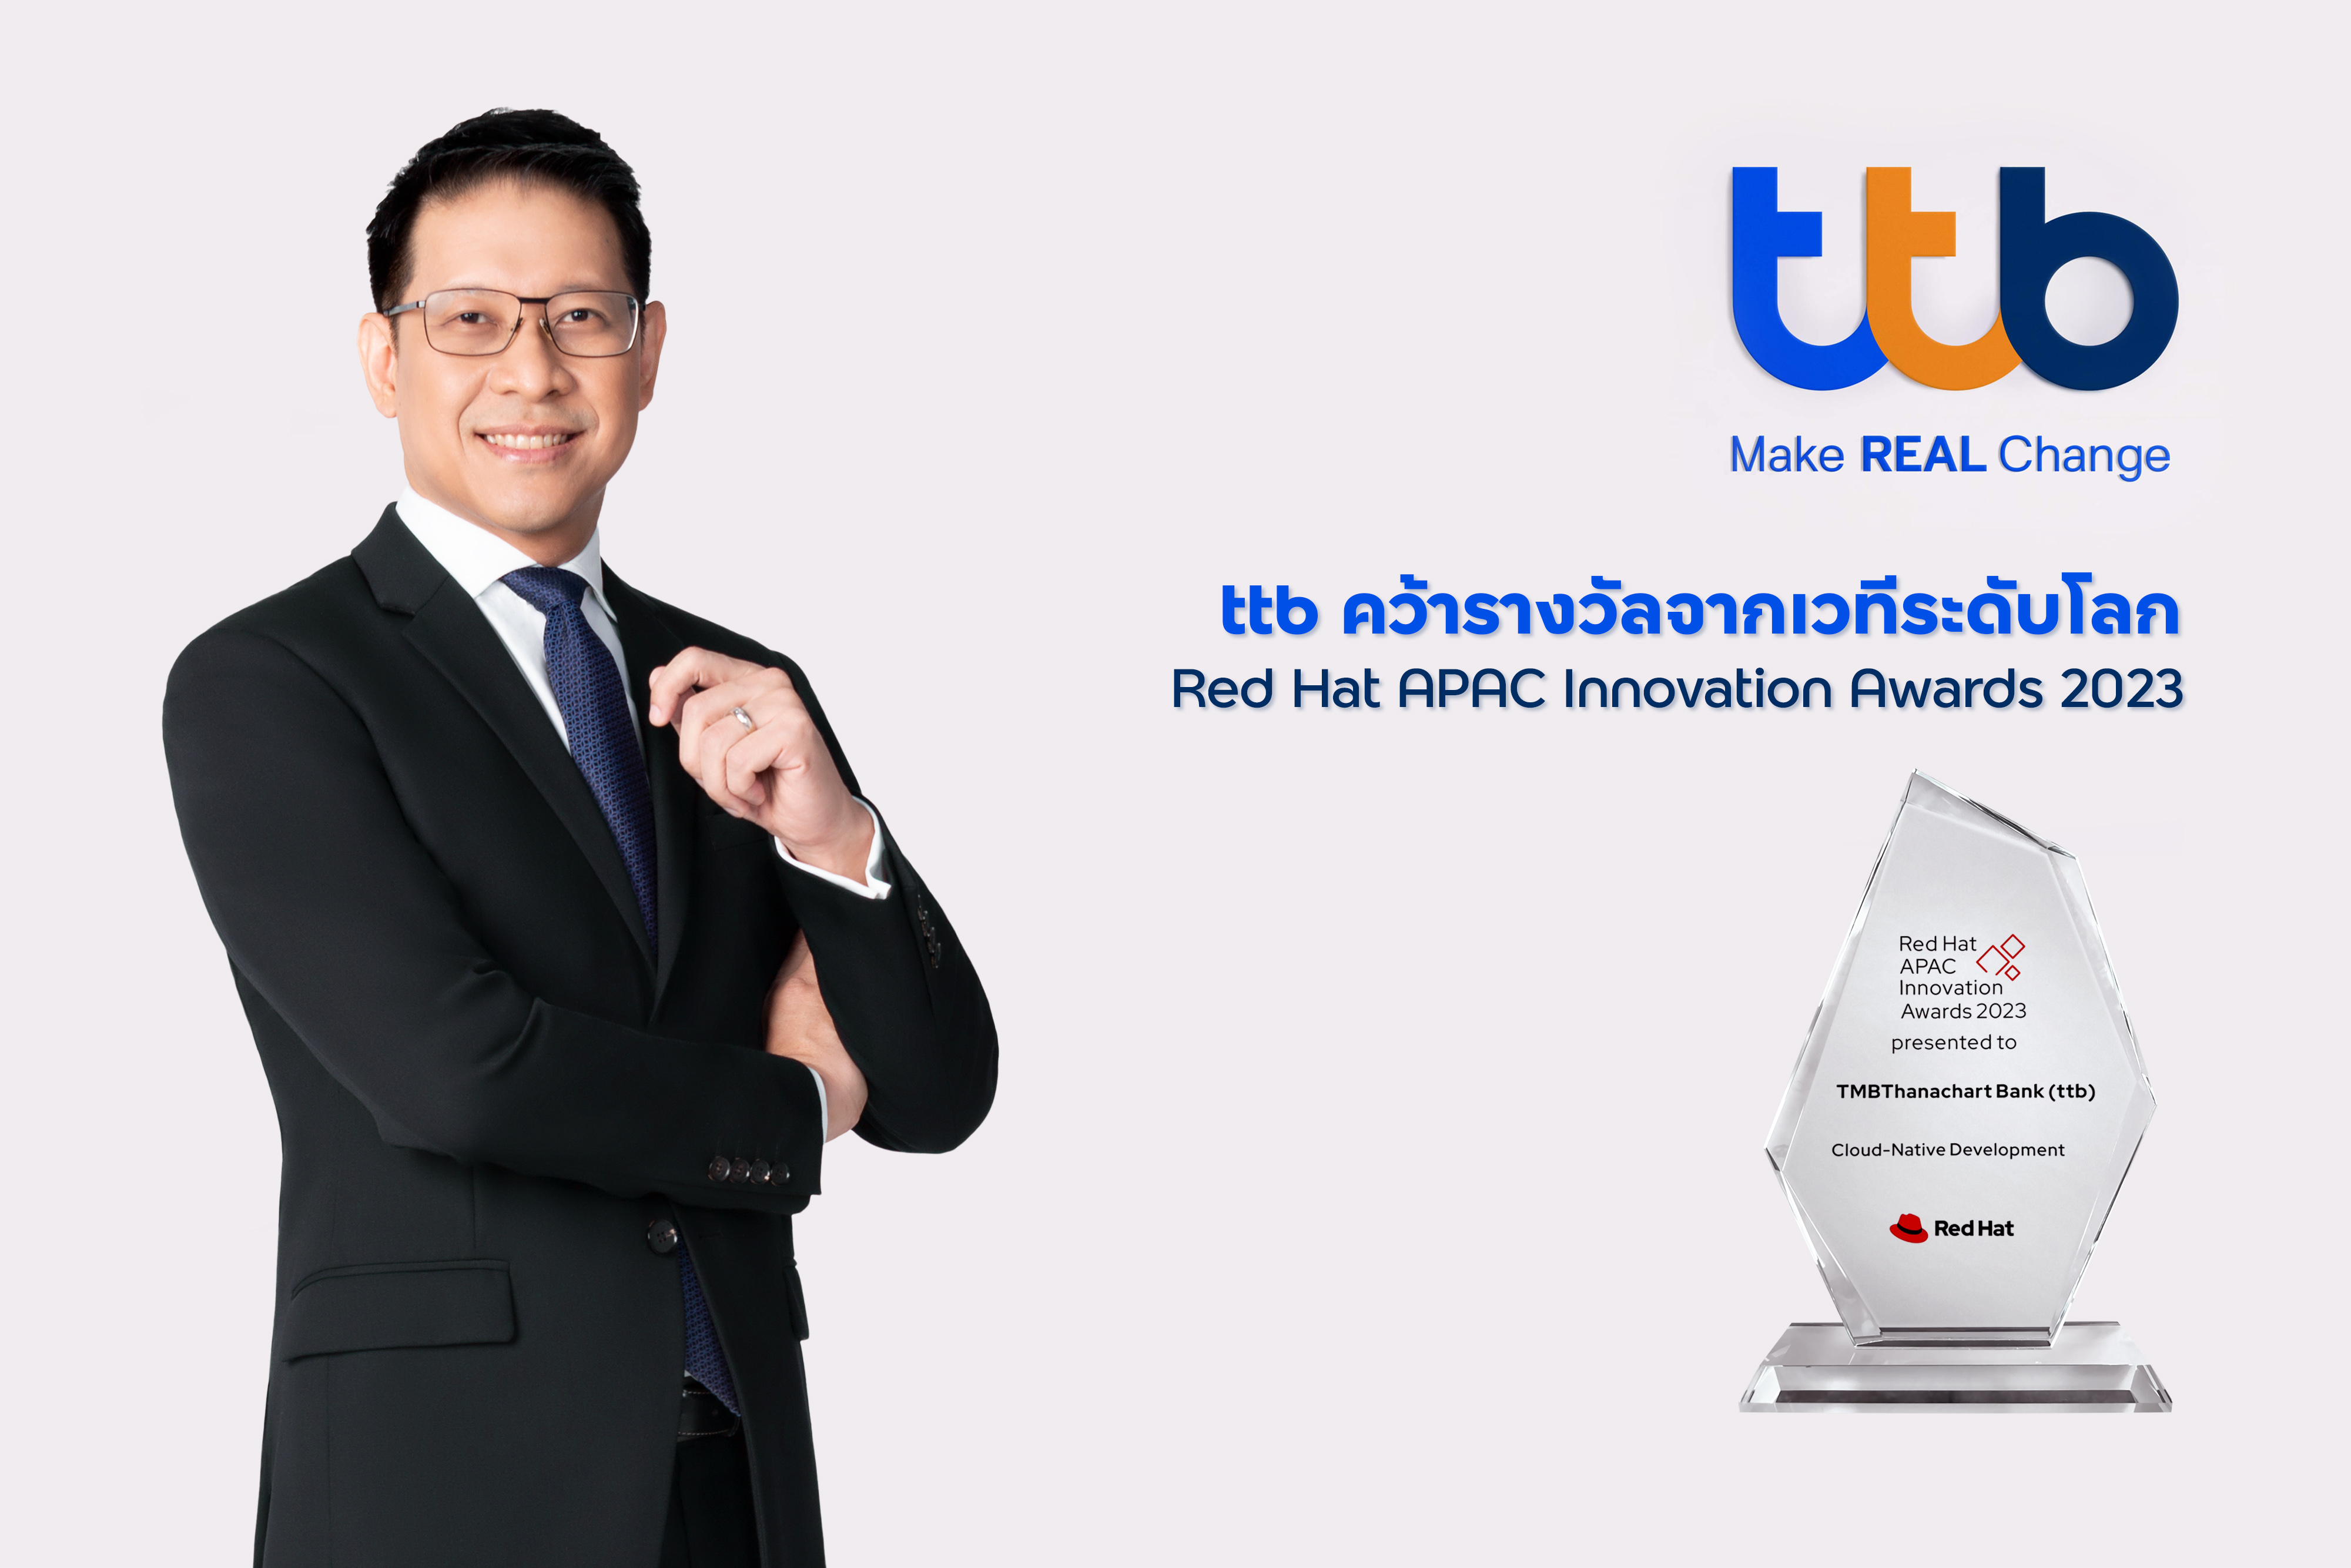 ทีเอ็มบีธนชาต คว้ารางวัล Red Hat APAC Innovation Awards 2023 โชว์ความโดดเด่นเป็นธนาคารไทยที่นำโซลูชันด้านโอเพนซอร์สมาใช้พัฒนาอย่างสร้างสรรค์